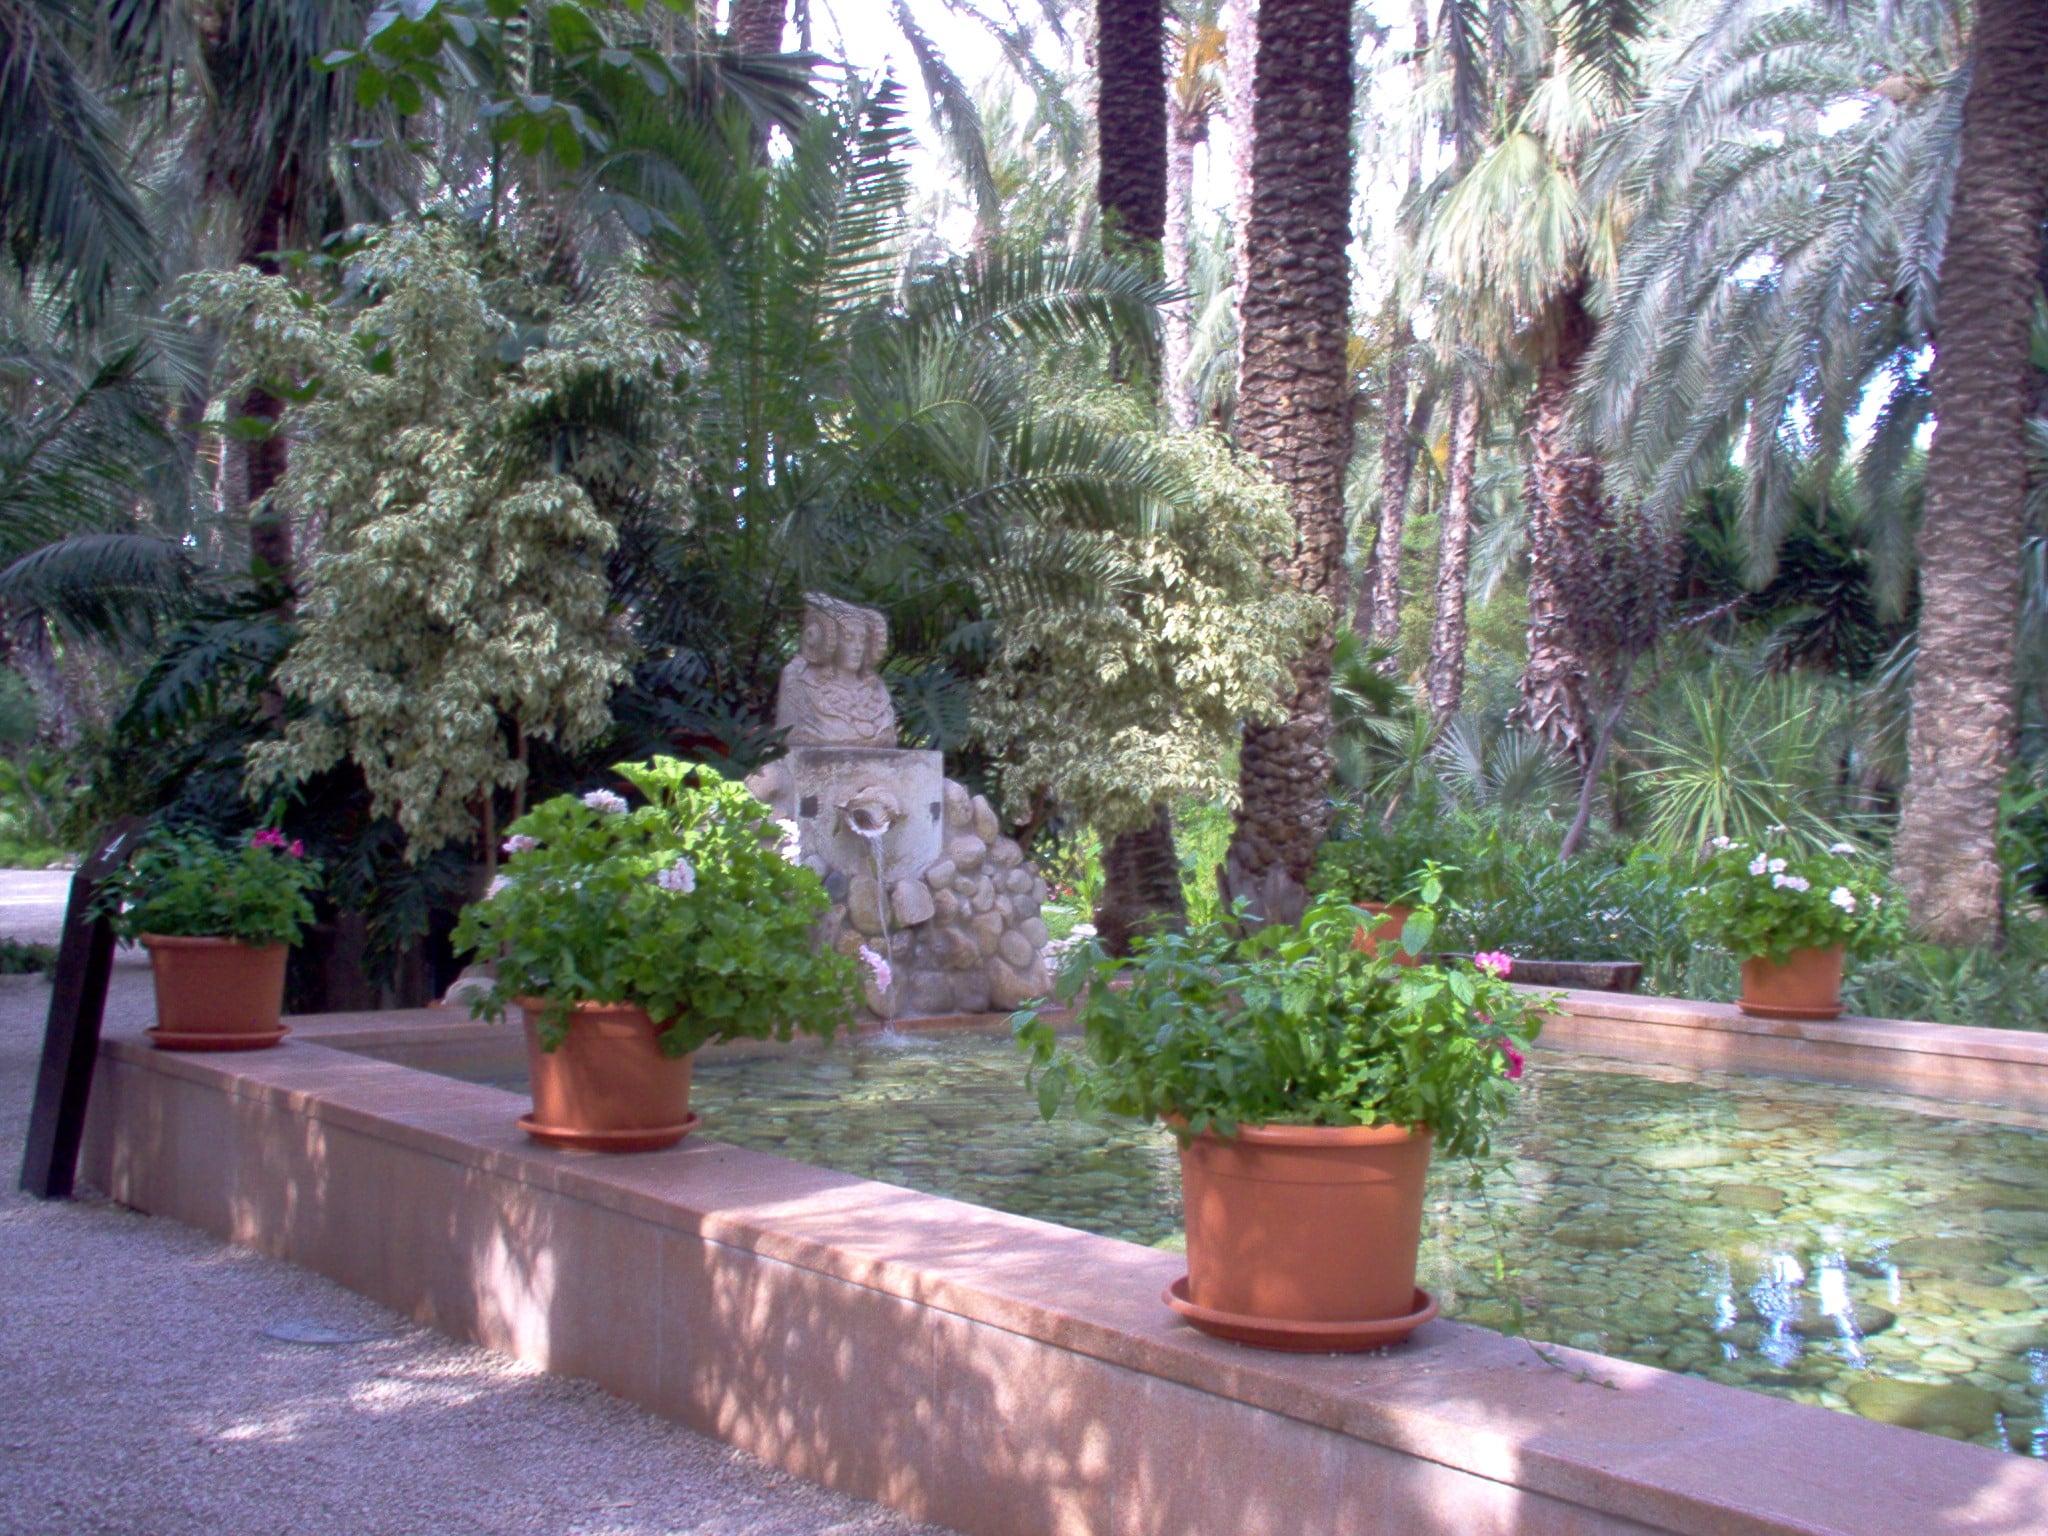 Alicante and Elche June, the huerto del cura, Elche national artistic garden